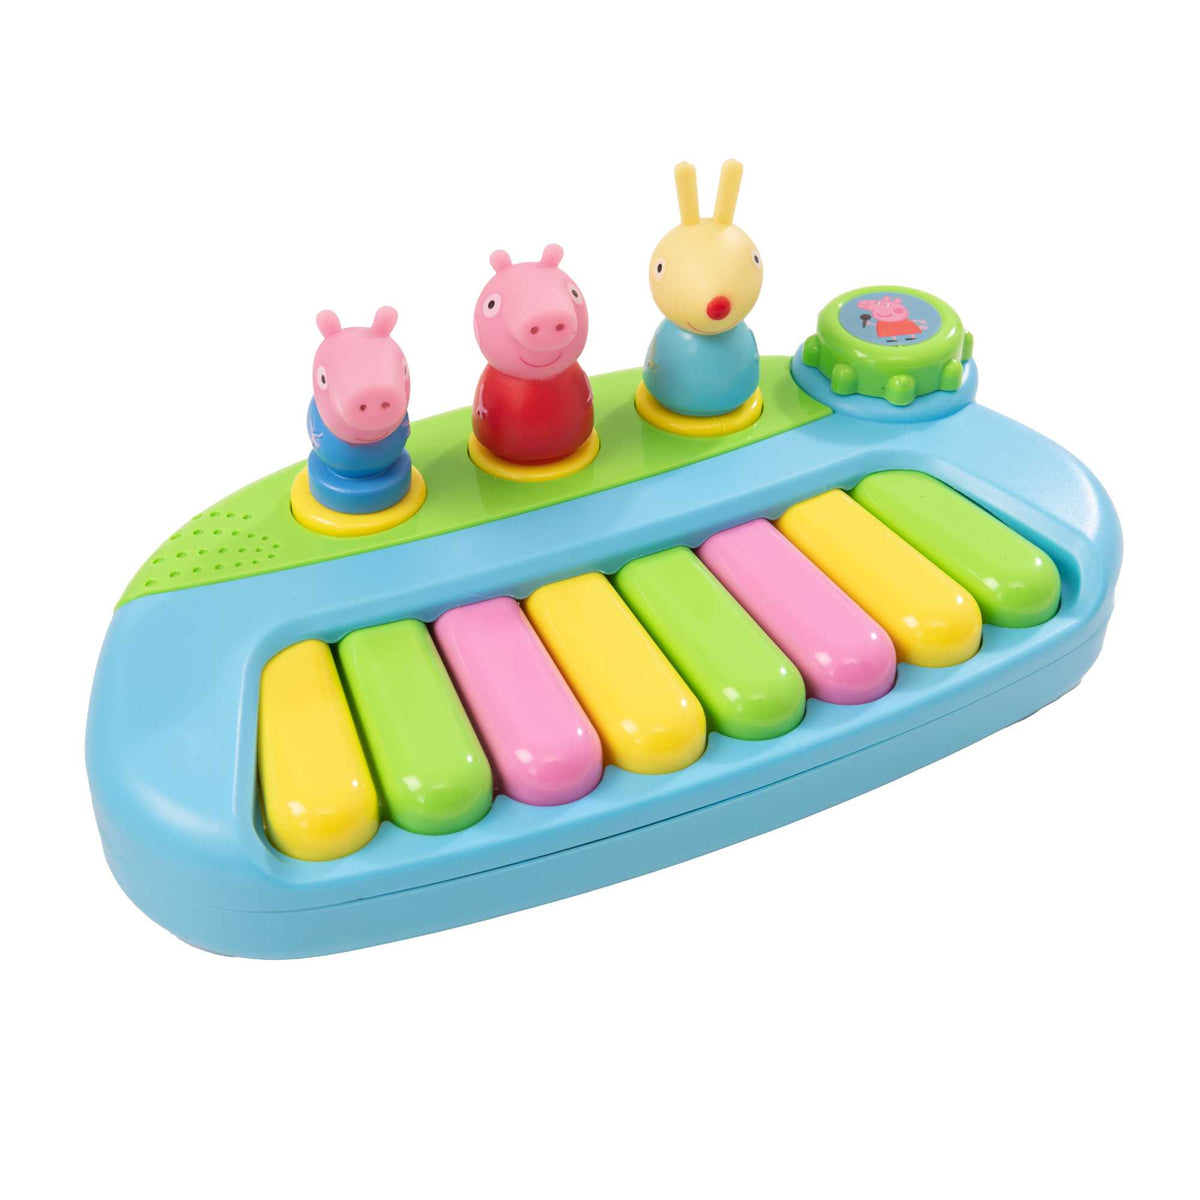 Peppa Pig Musical Keyboard